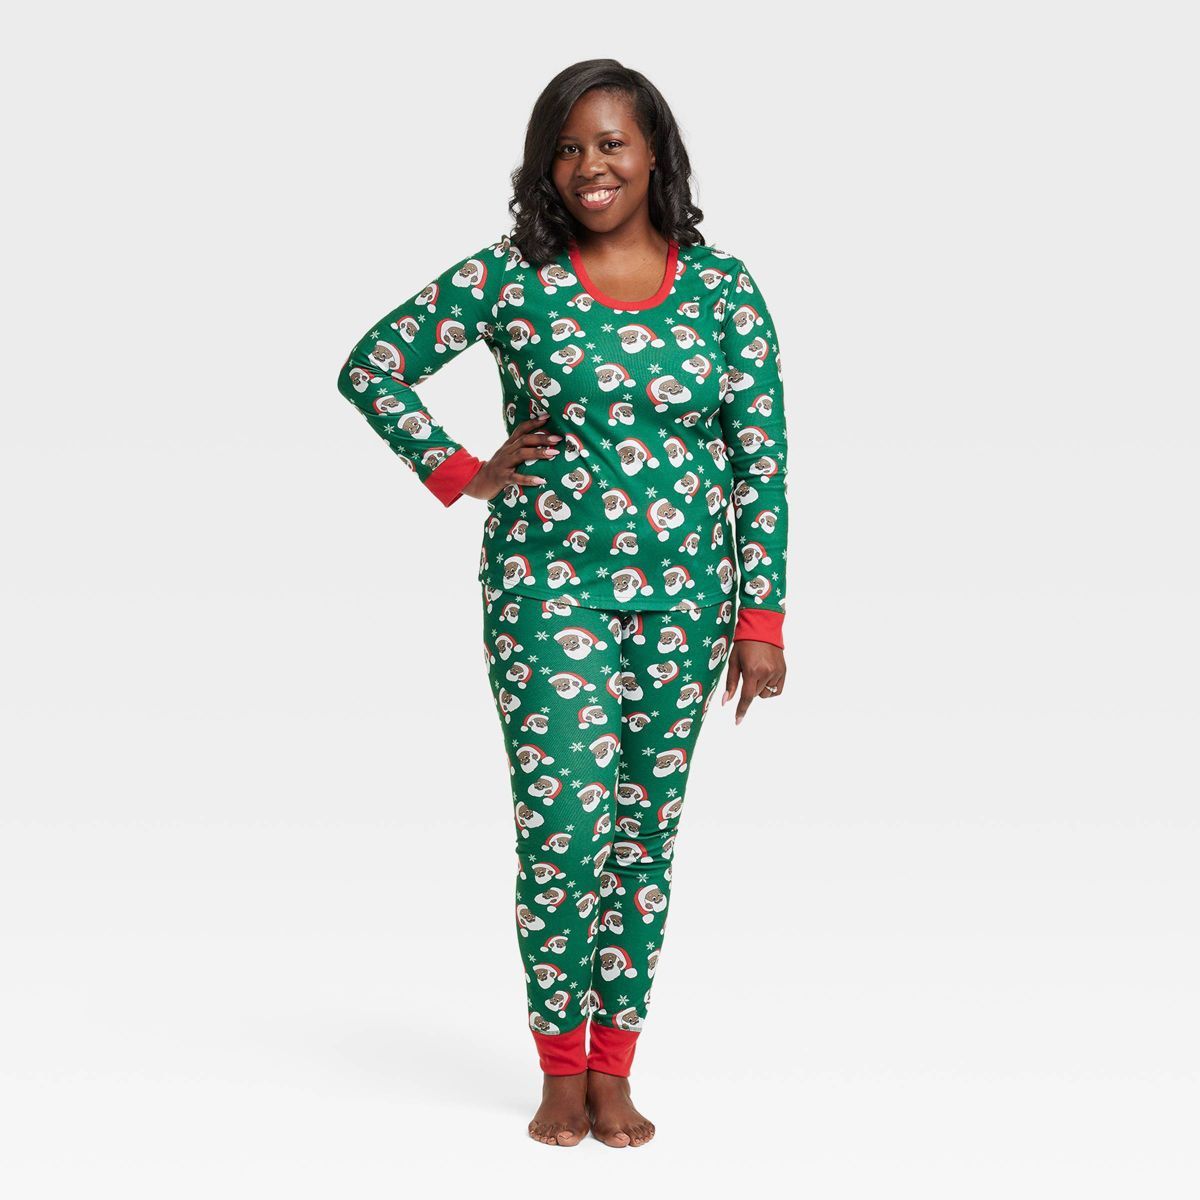 Greentop Gifts Women's Santa Print Matching Family Pajama Set - Green | Target